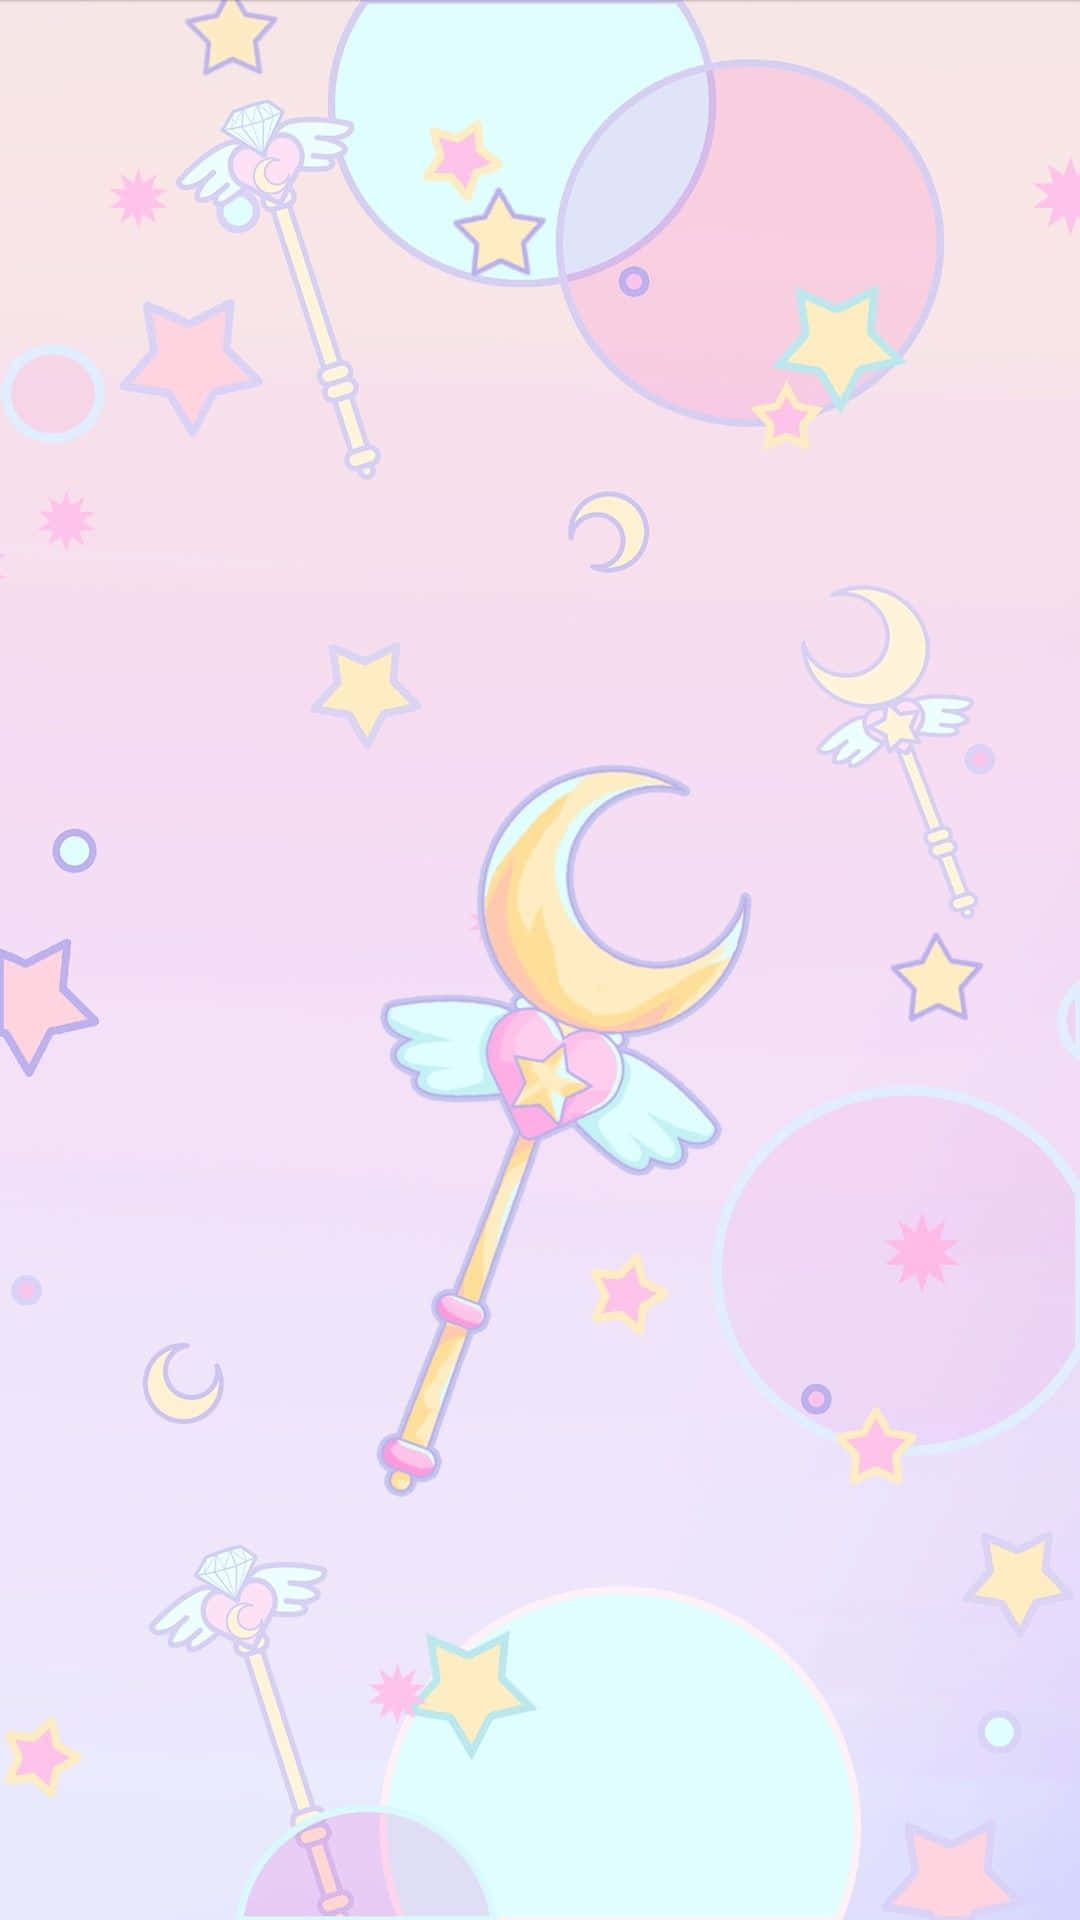 Solarsystem-inspiriertes Sailor Moon-muster Wallpaper